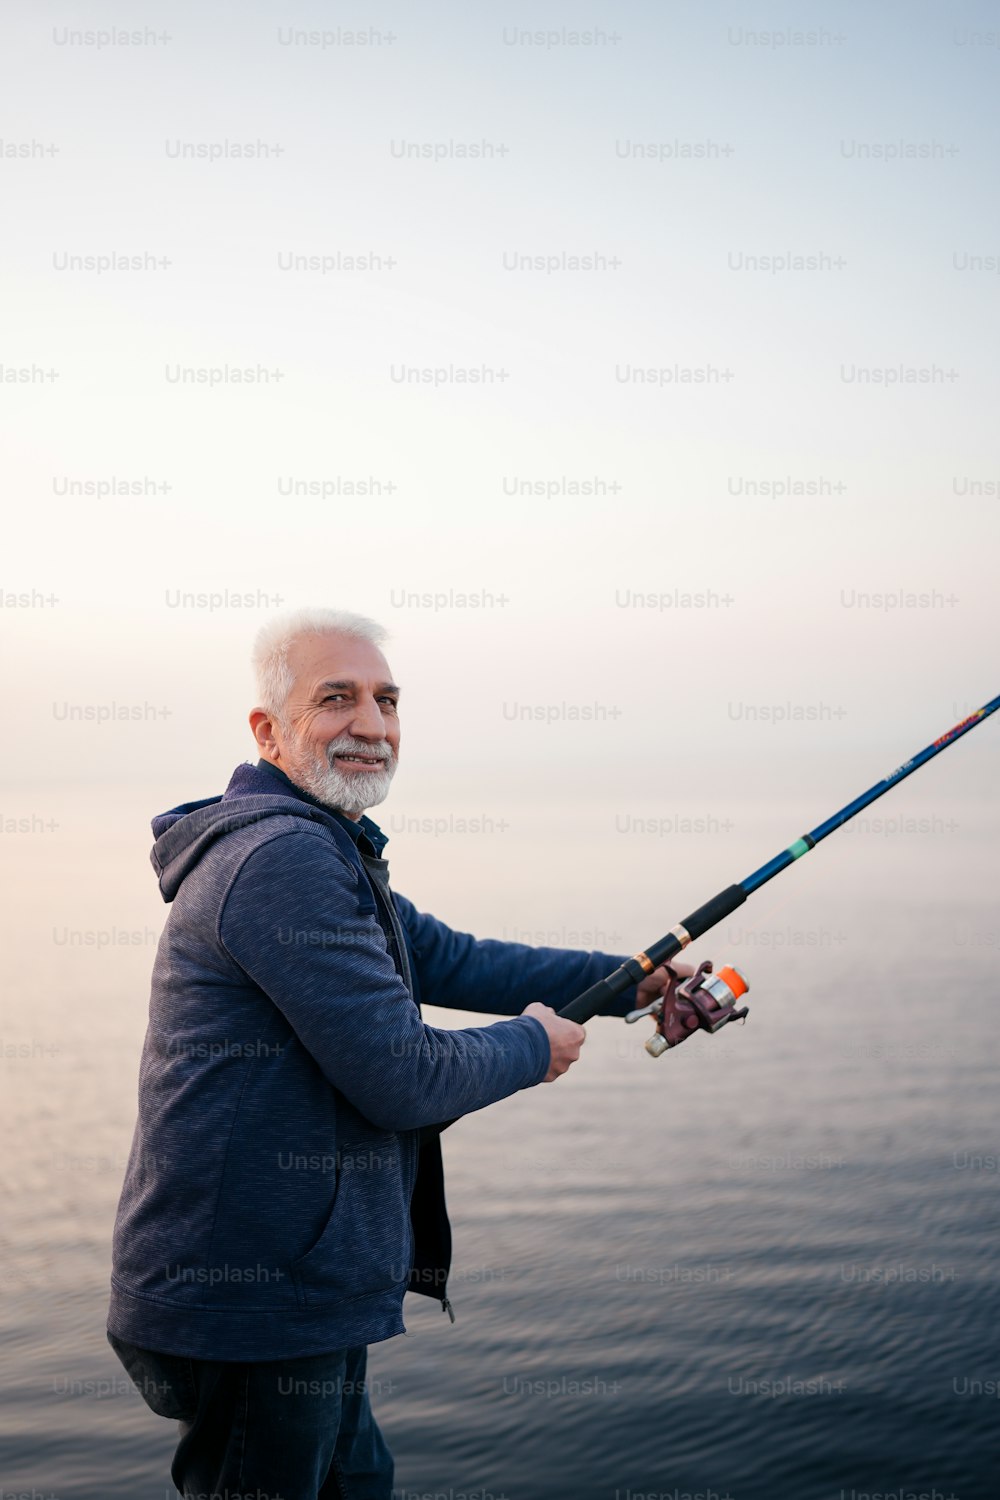 Ein Mann, der auf einem Boot steht und eine Angelrute hält